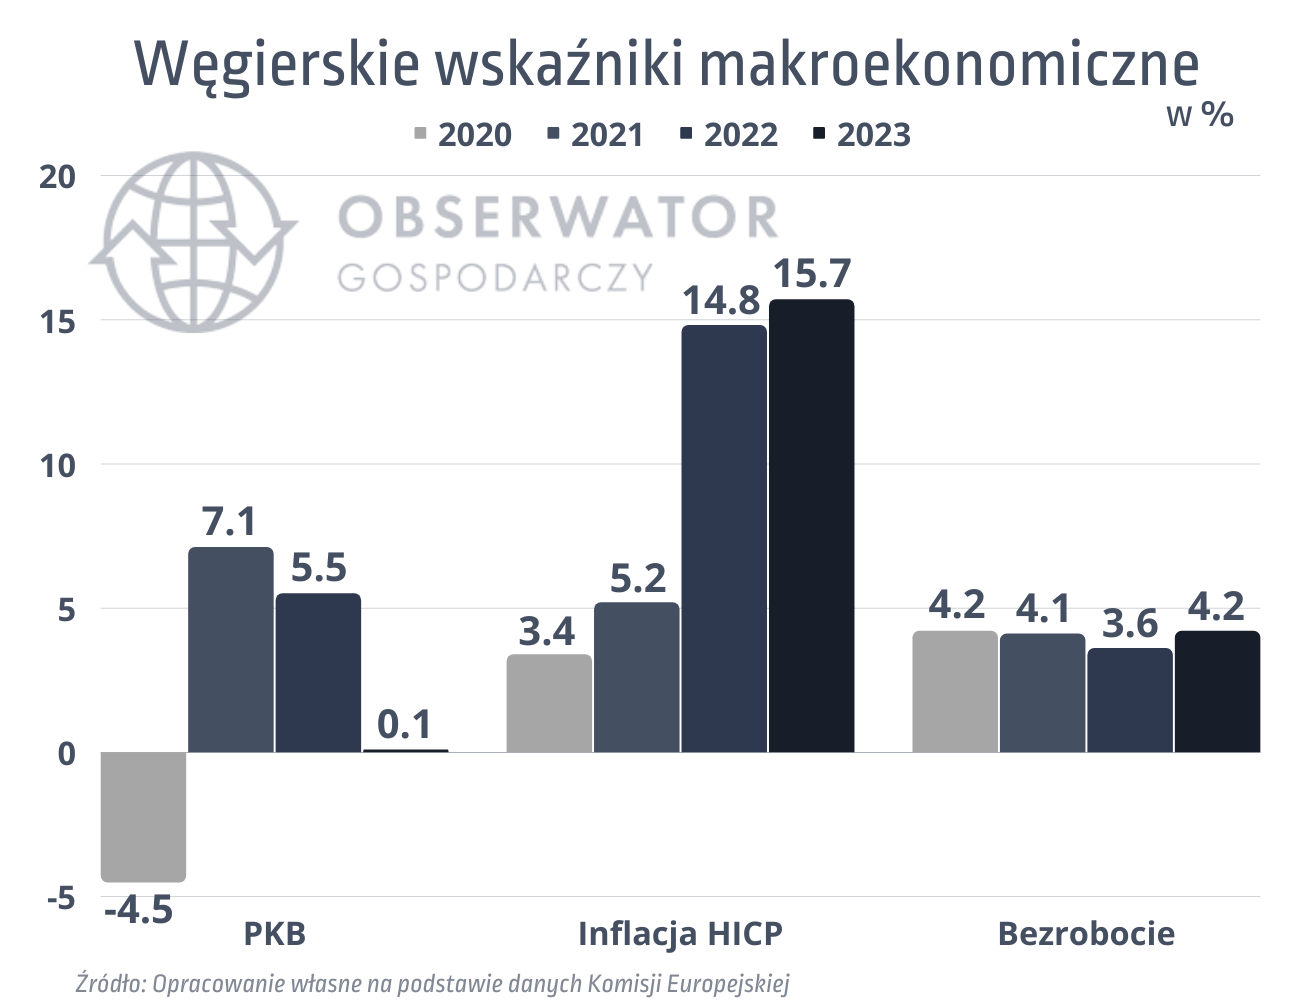 węgierskie wskaźniki makroekonomiczne